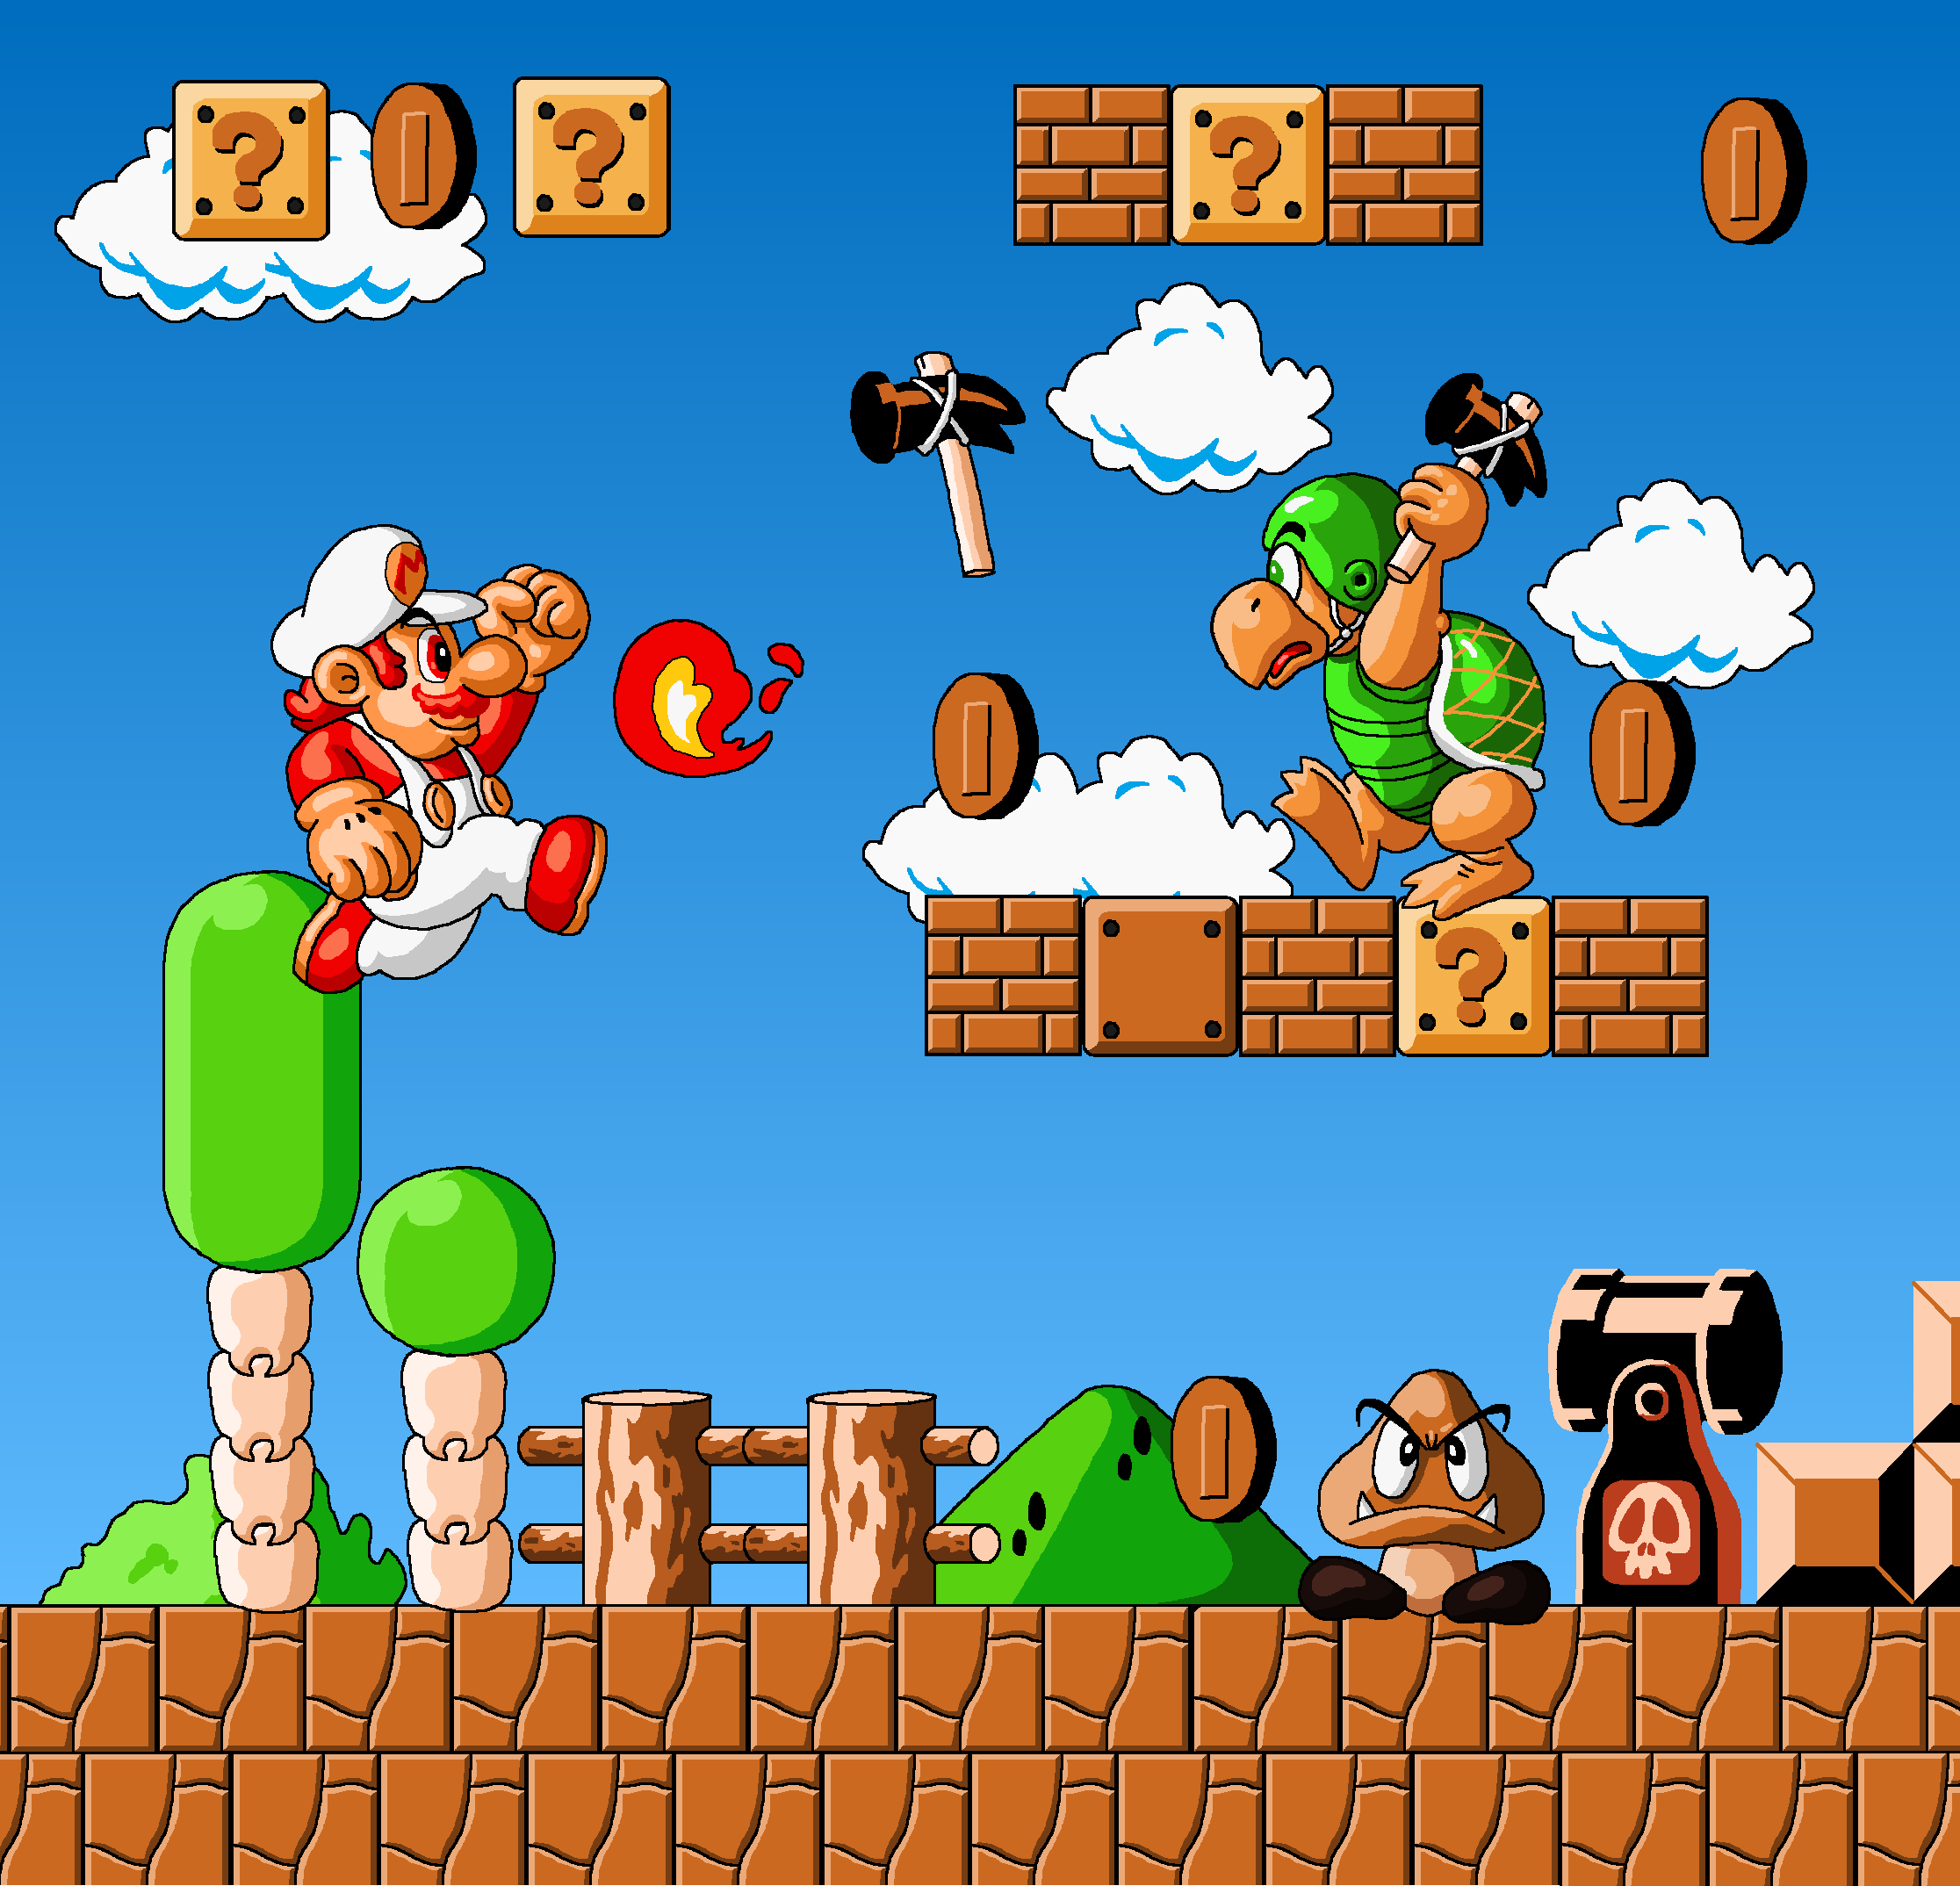 Super Mario 2 features